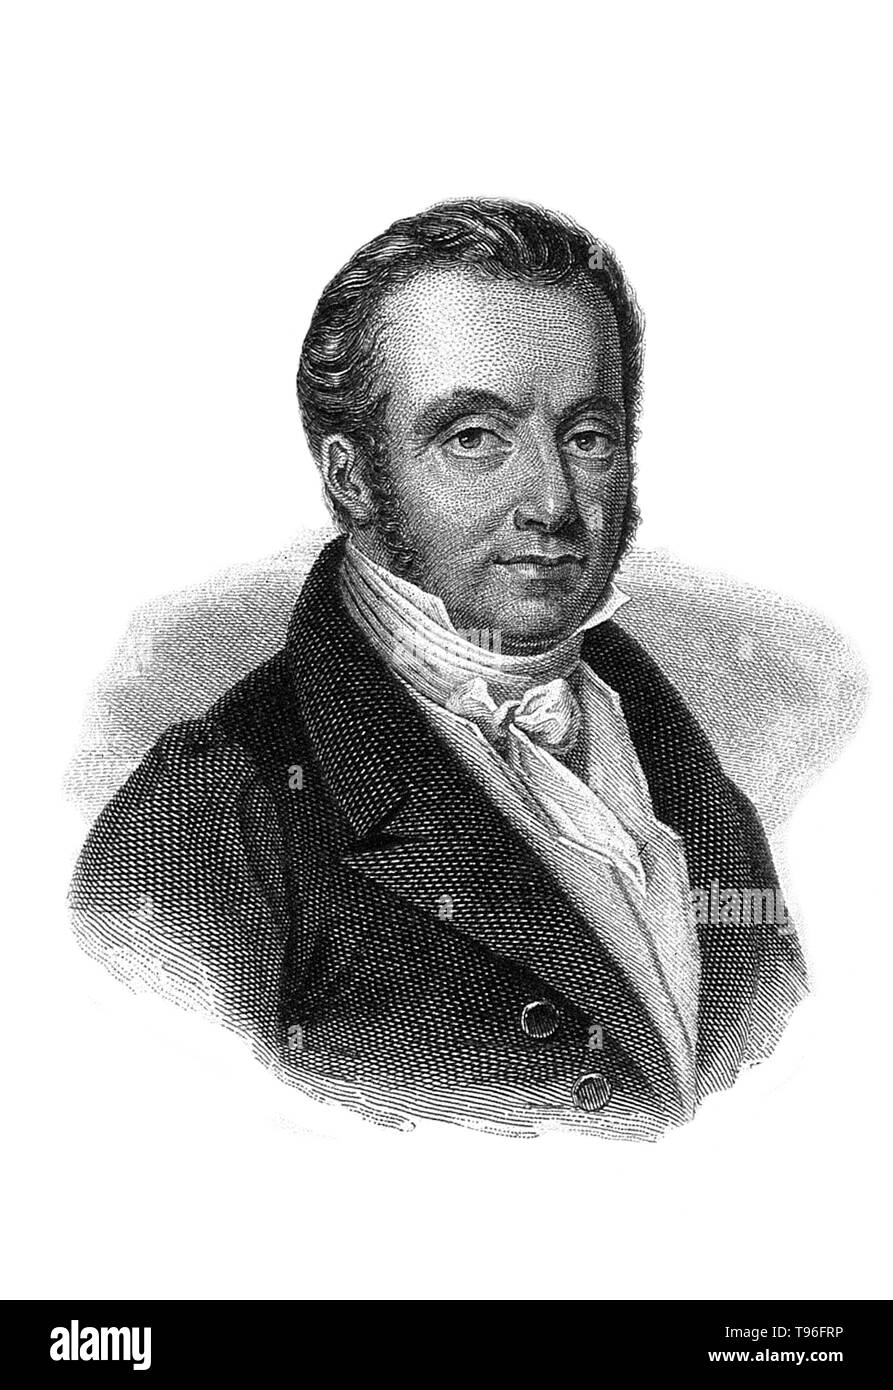 Il barone Guillaume Dupuytren (5 ottobre 1777 - 8 febbraio 1835) era un francese anatomista e chirurgo militare. Sebbene egli ha guadagnato molta stima per il trattamento di Napoleone Bonaparte emorroidi, egli è meglio conosciuto oggi per la sua descrizione di Dupuytren's contrattura che è chiamato dopo di lui e che egli azionata per la prima volta nel 1831 e pubblicato sulla rivista The Lancet nel 1834. Morì nel 1835 all'età di 57. Incisione di F. J. Dequevauviller non datato. Foto Stock